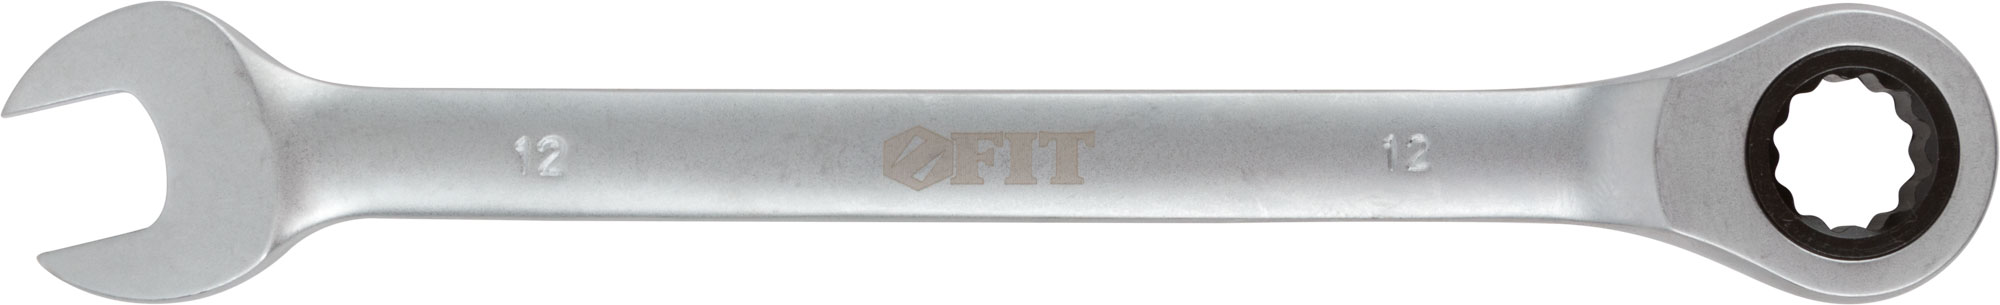 Ключ комбинированный трещоточный, 12 мм. FIT 63462 комбинированный реверсивный трещоточный ключ hortz